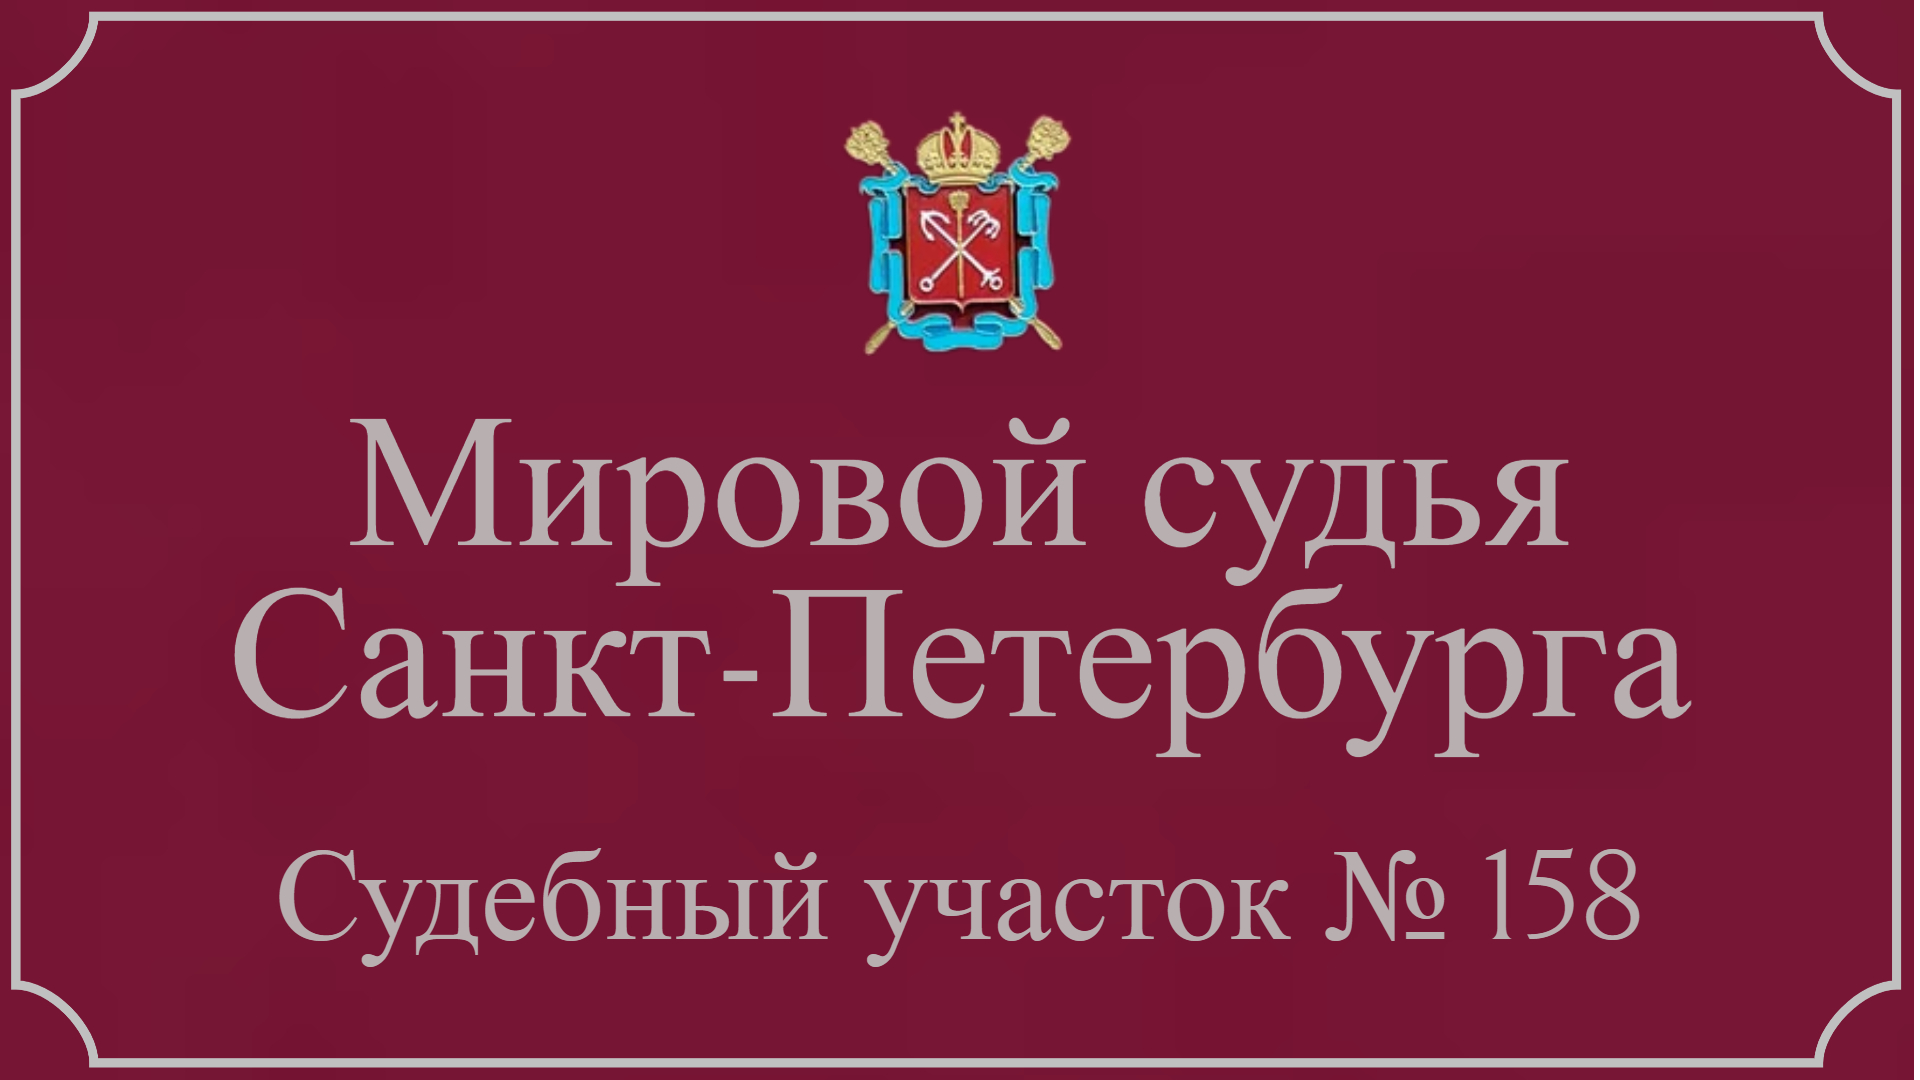 Информация по 158 судебному участку Санкт-Петербурга в г. Петродворец.